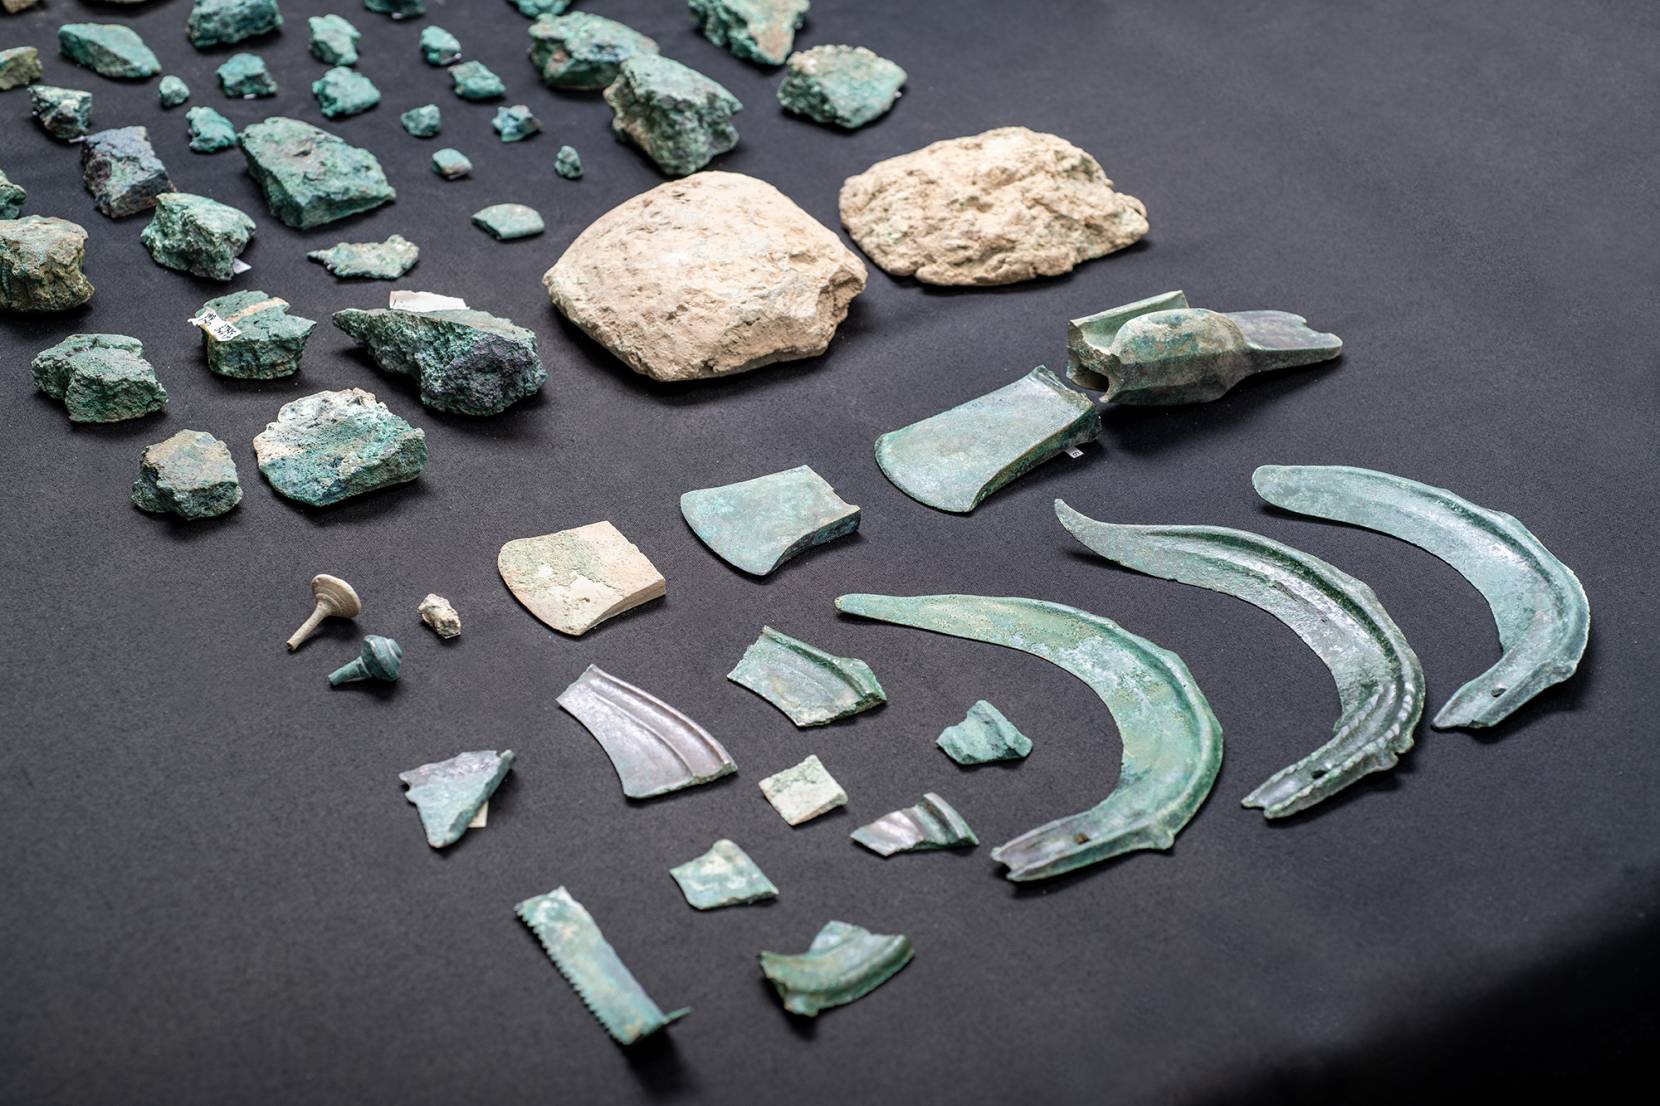 15 av. J.-C. Une expédition romaine dans les Alpes suisses découvre 80 artefacts distincts de l'âge du bronze 1